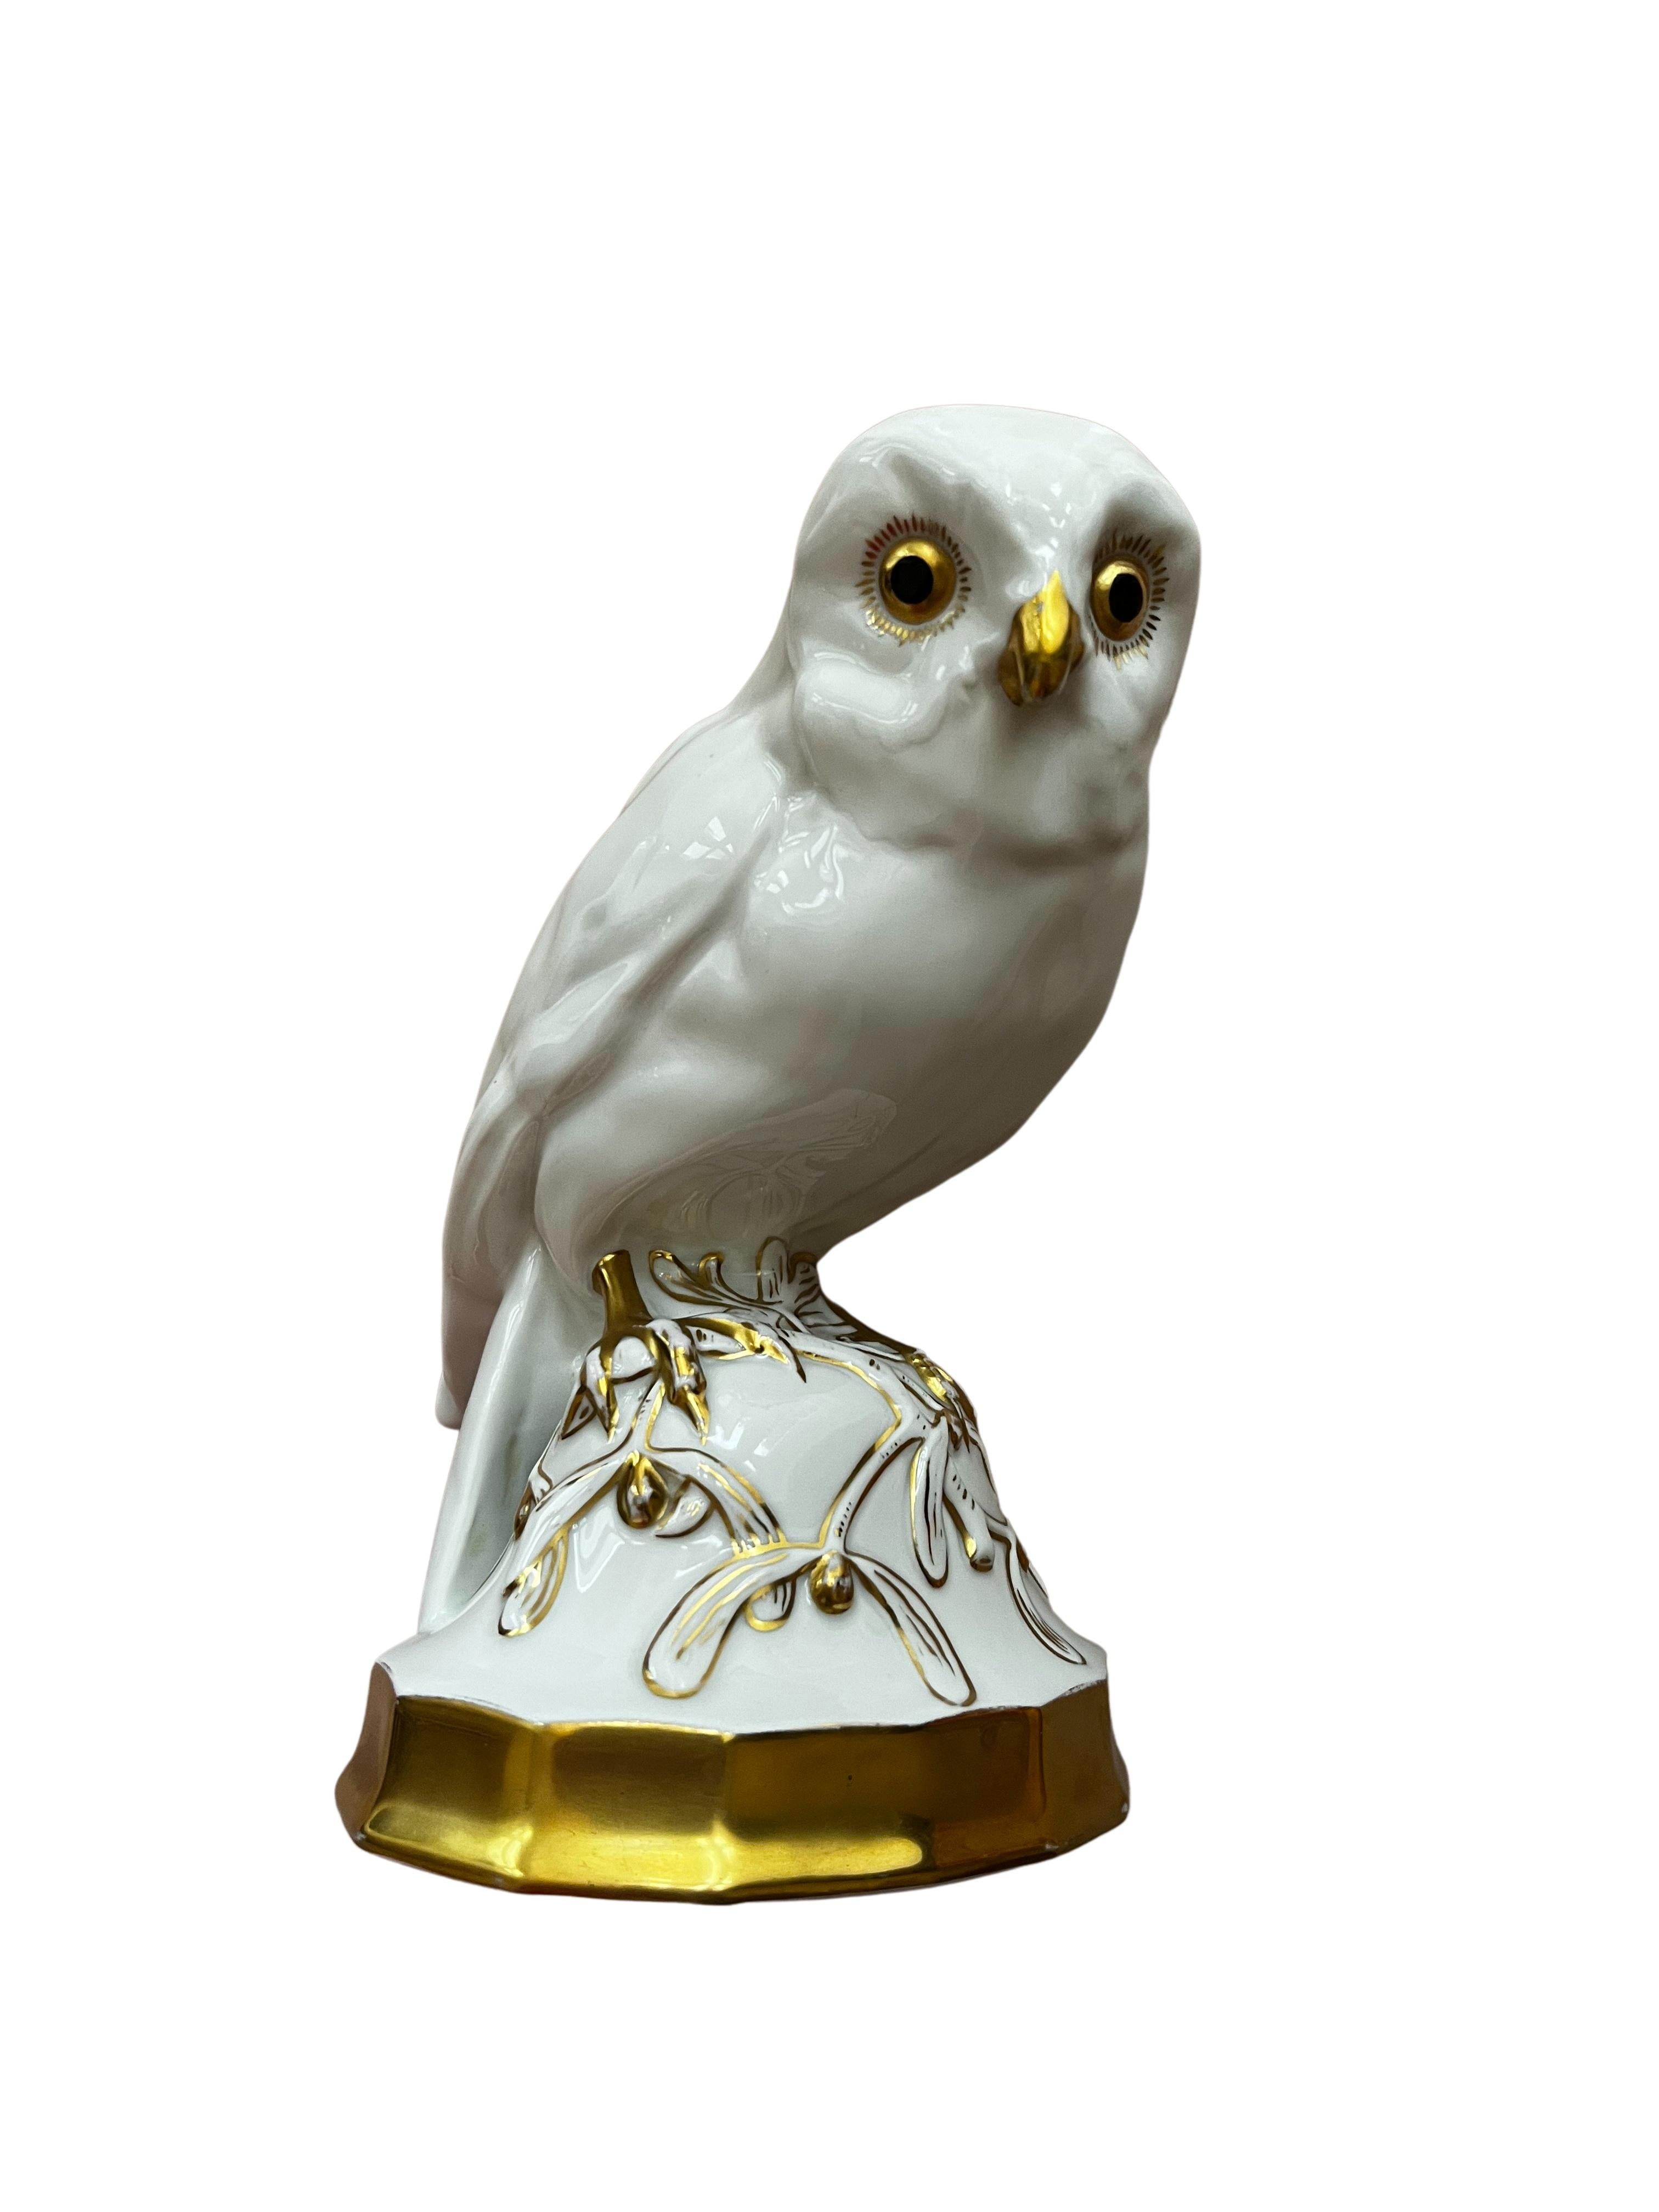 Owl misteltoe pedestal porcelain Hutschenreuther art dep Prof. Klee 1918 Germany For Sale 2